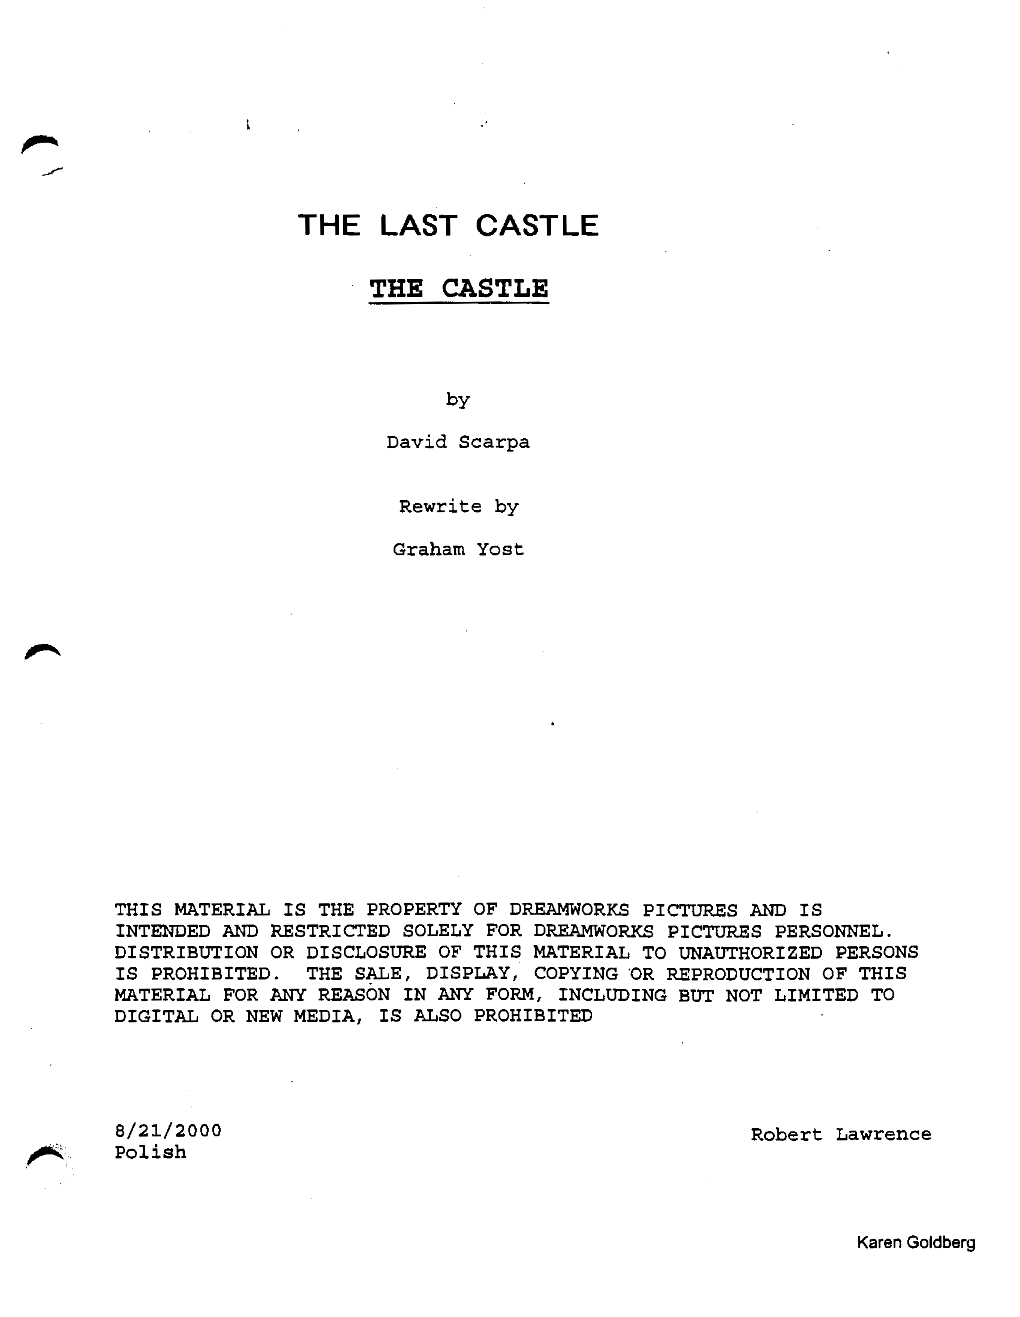 The Last Castle 2001